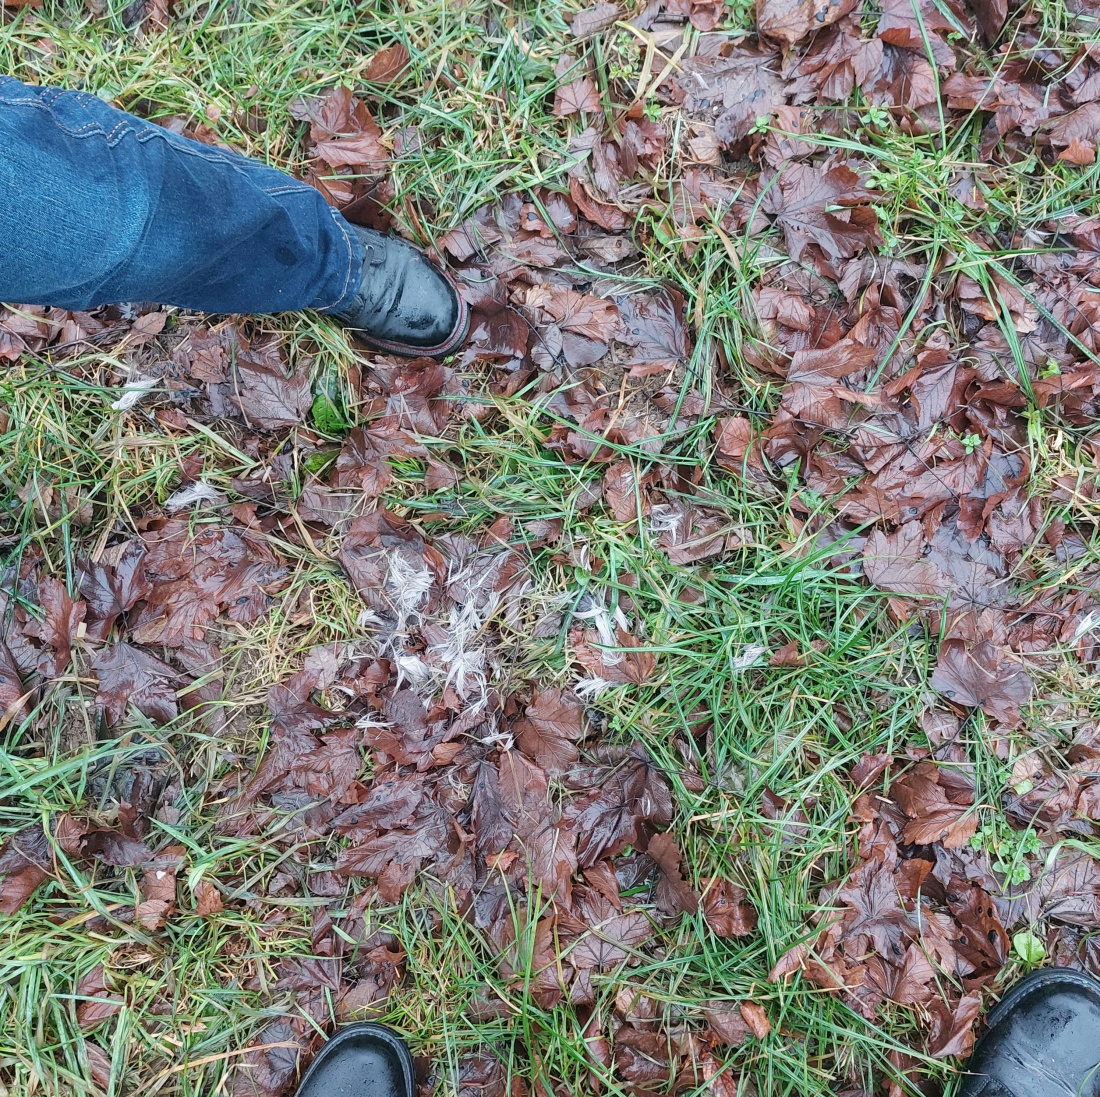 Foto: Martin Zehrer - Knochen auf einer Wiese bei Godas...<br />
Am Donnerstag, 30. Dezember 2021, haben wir beim Spaziergang dieses Bein eines Rehs ca. 300 Meter oberhalb von Godas entdeckt.<br />
An z 